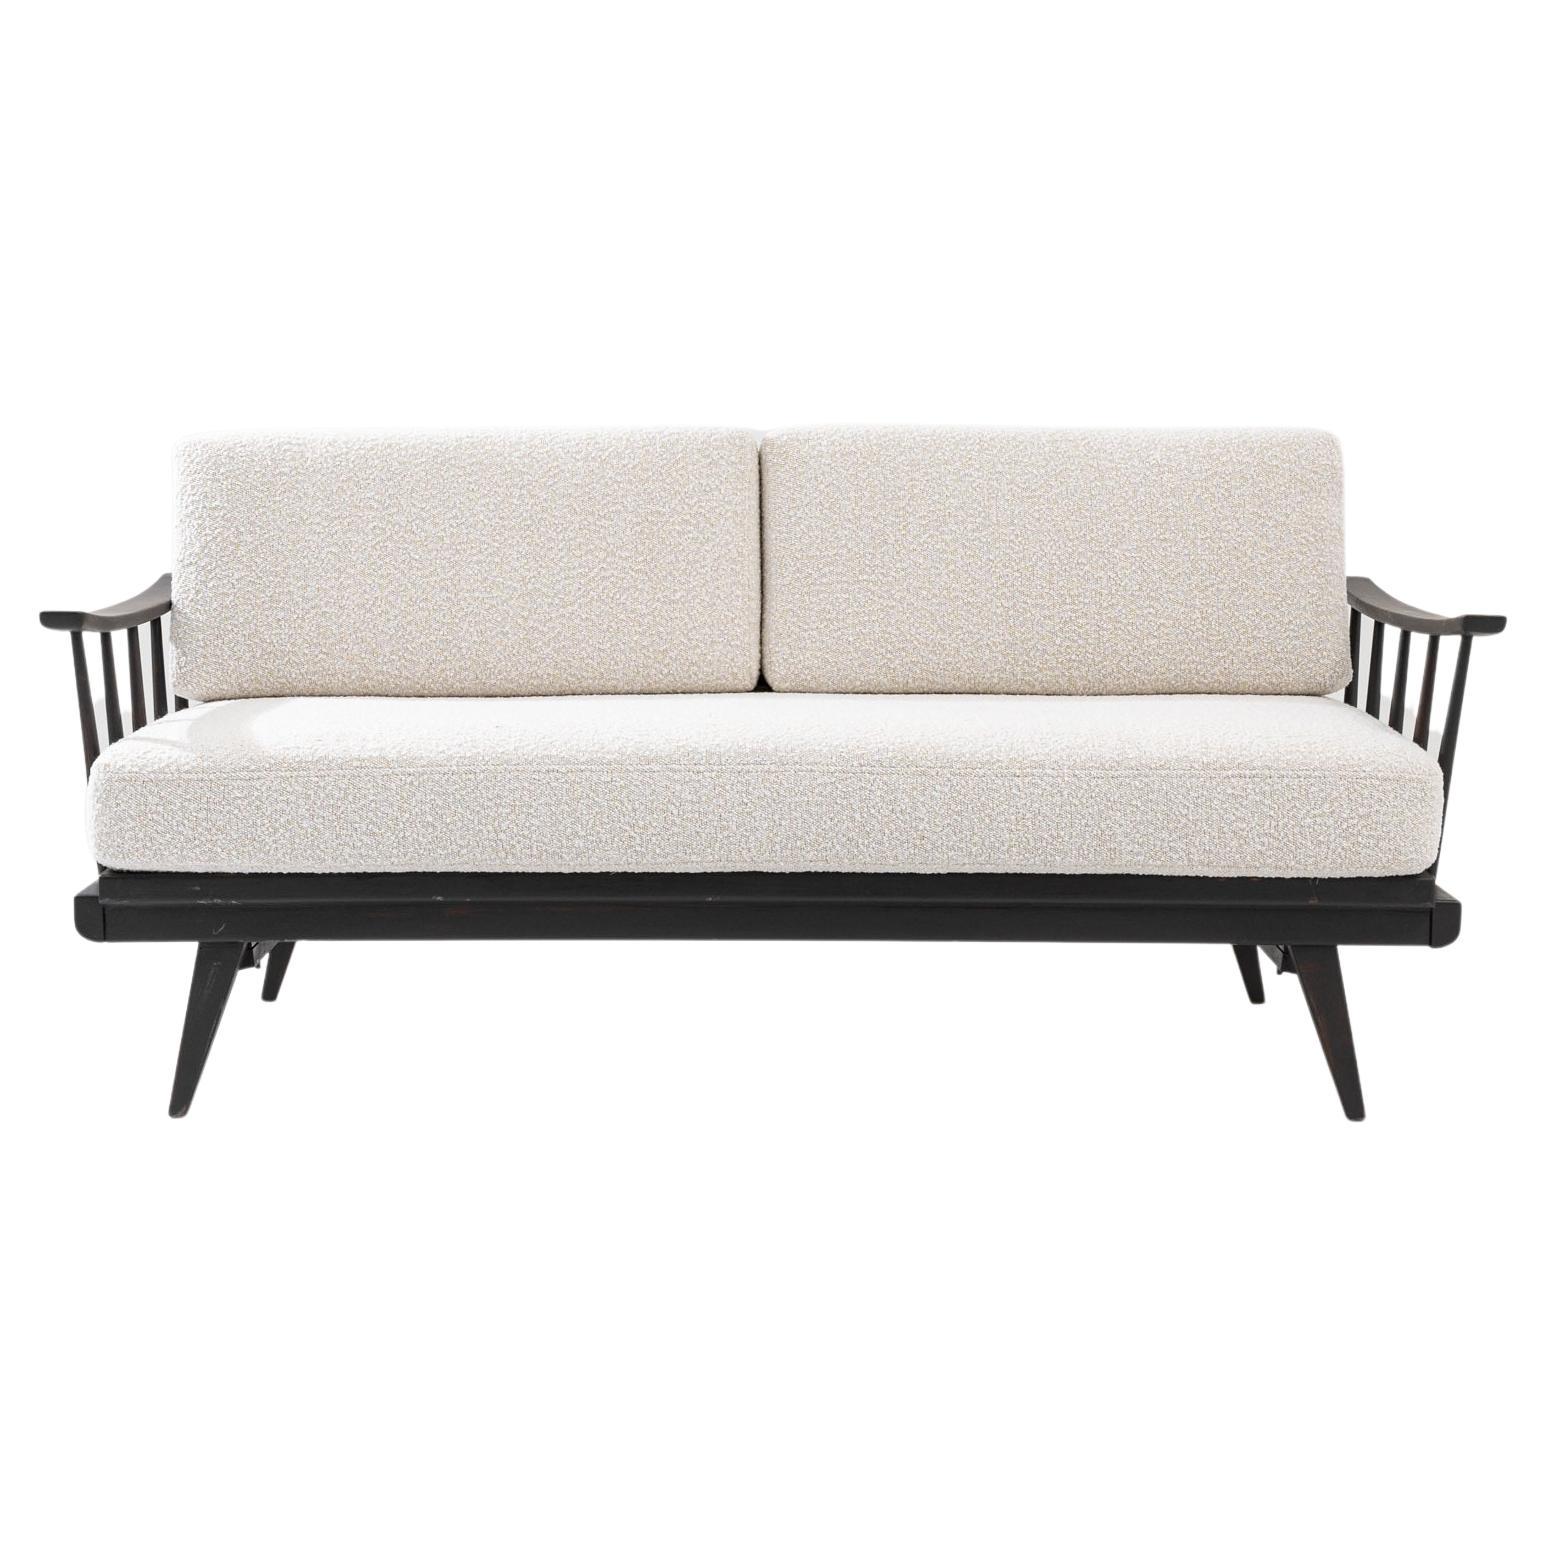 1960s Czech Wooden Upholstered Sofa